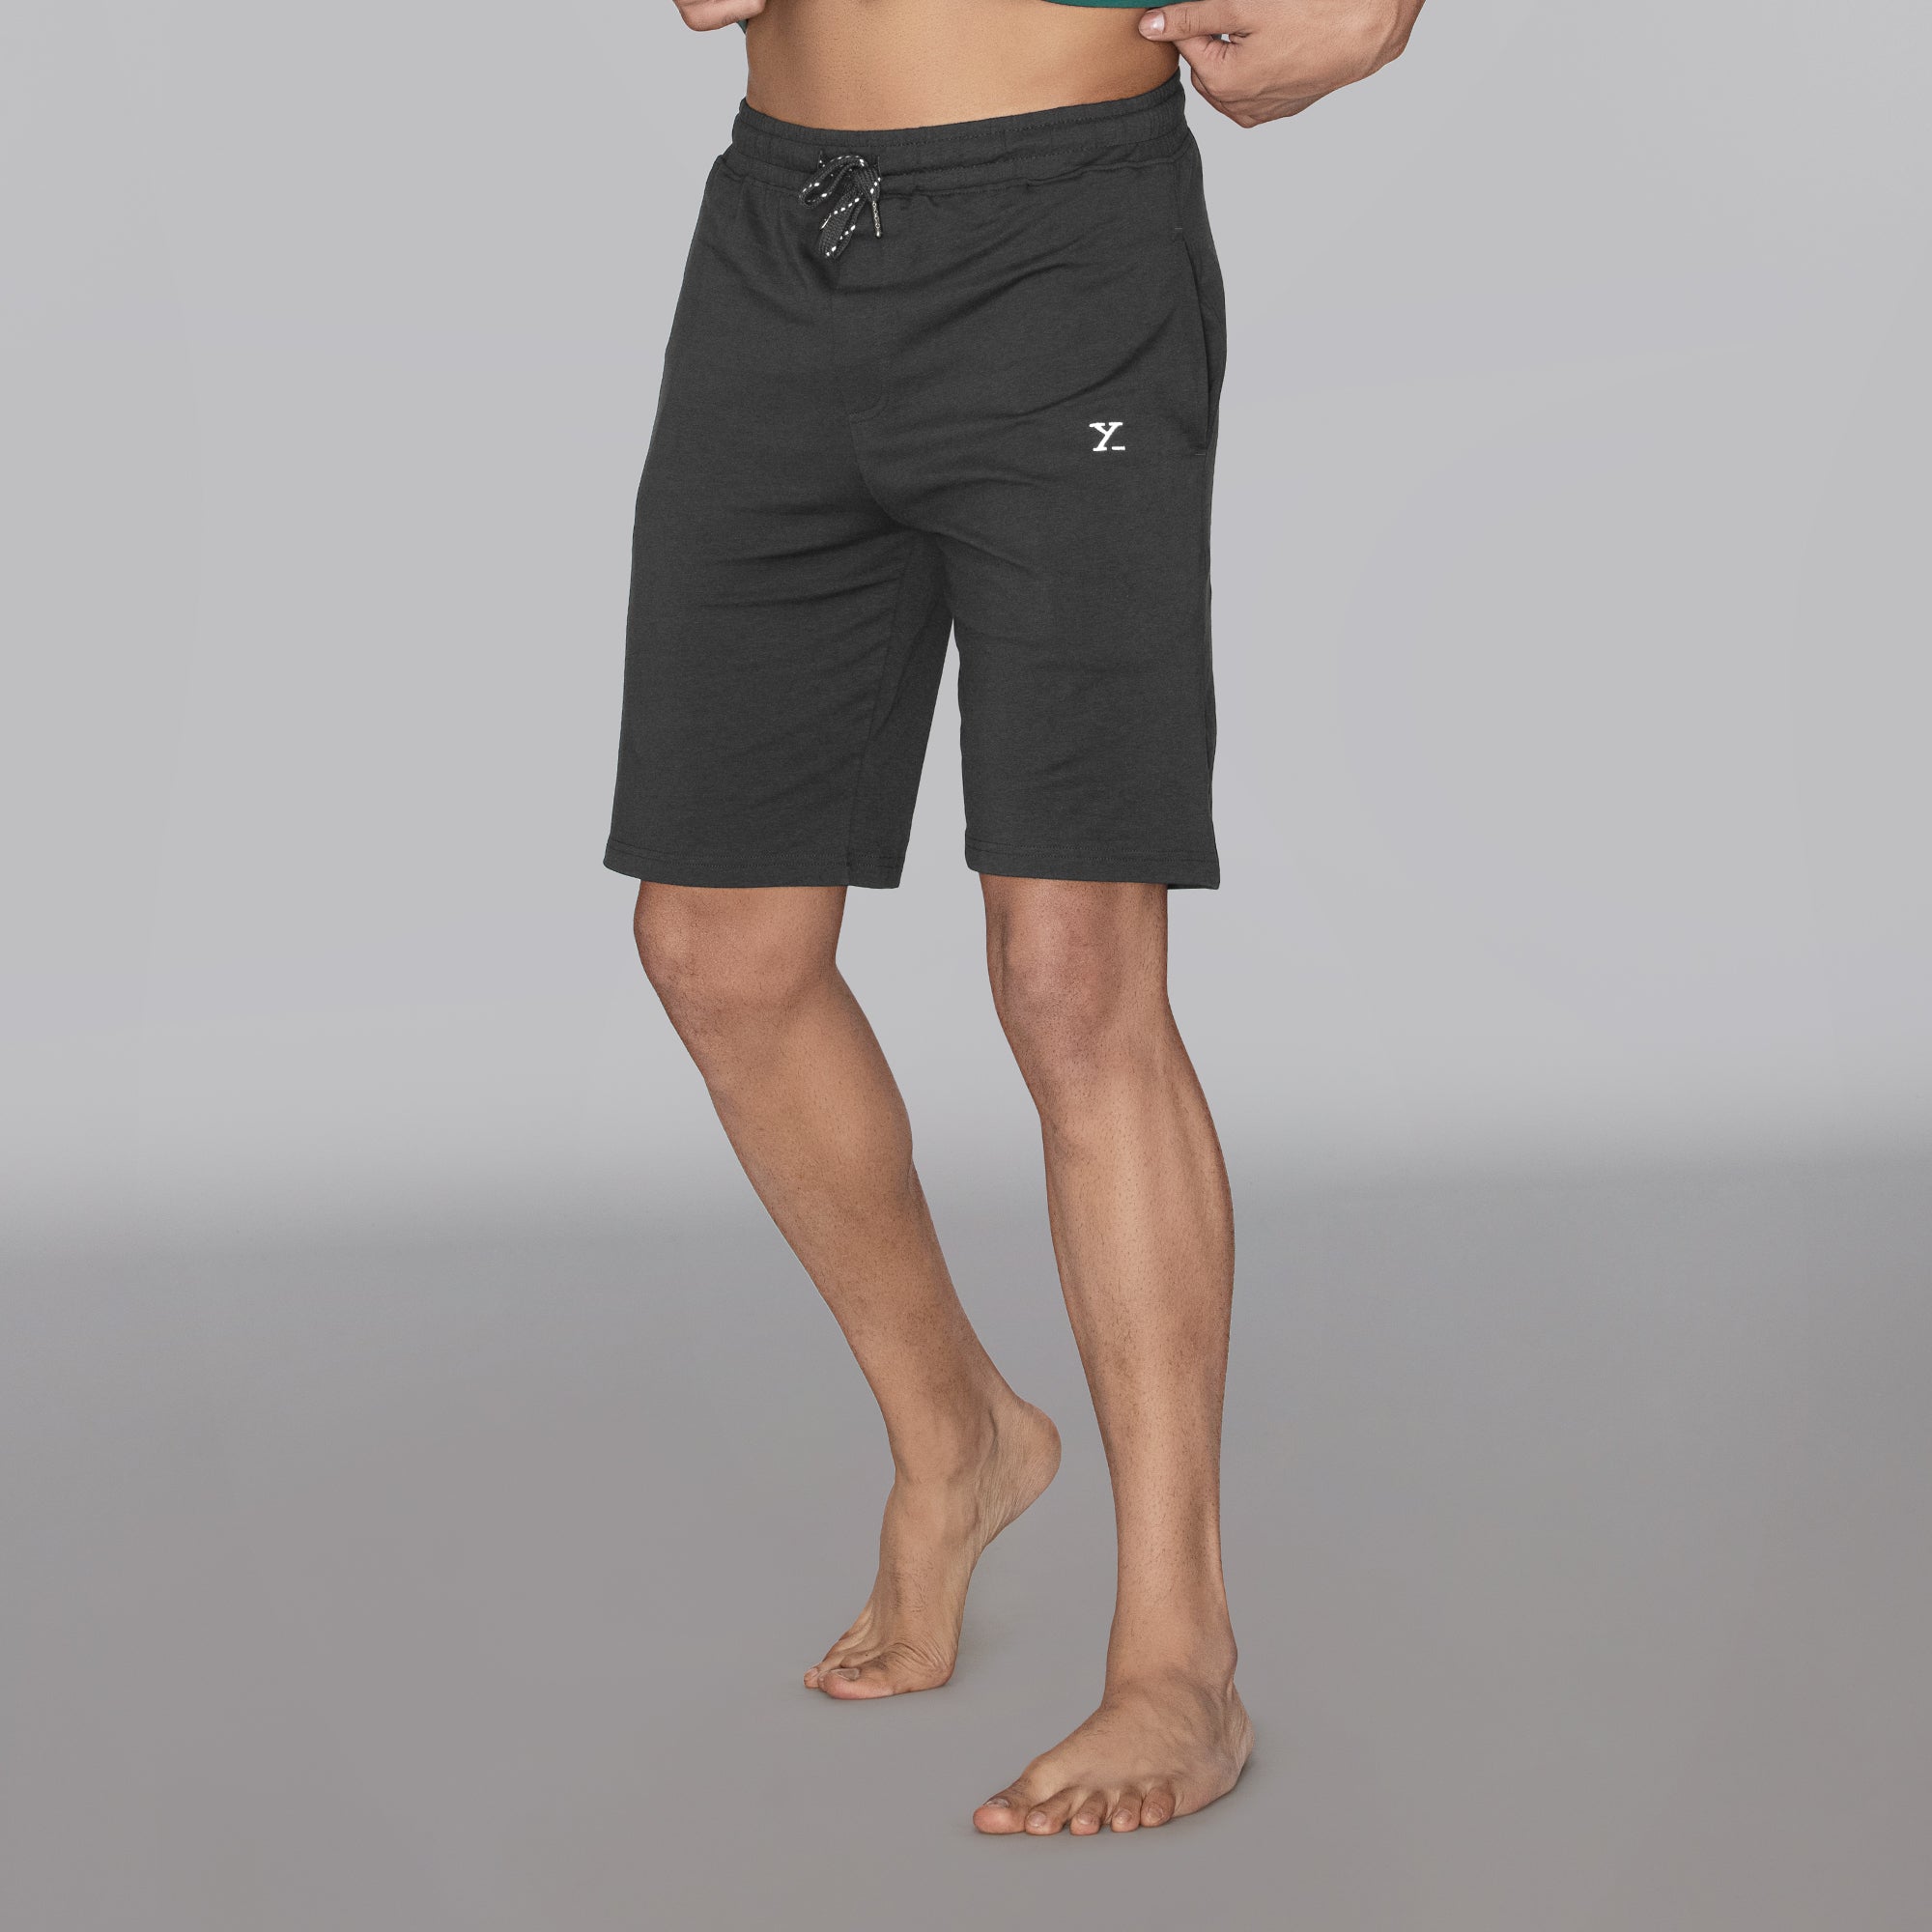 Men's Shorts - Buy Stylish Shorts For Men Online - Upto 25% Off